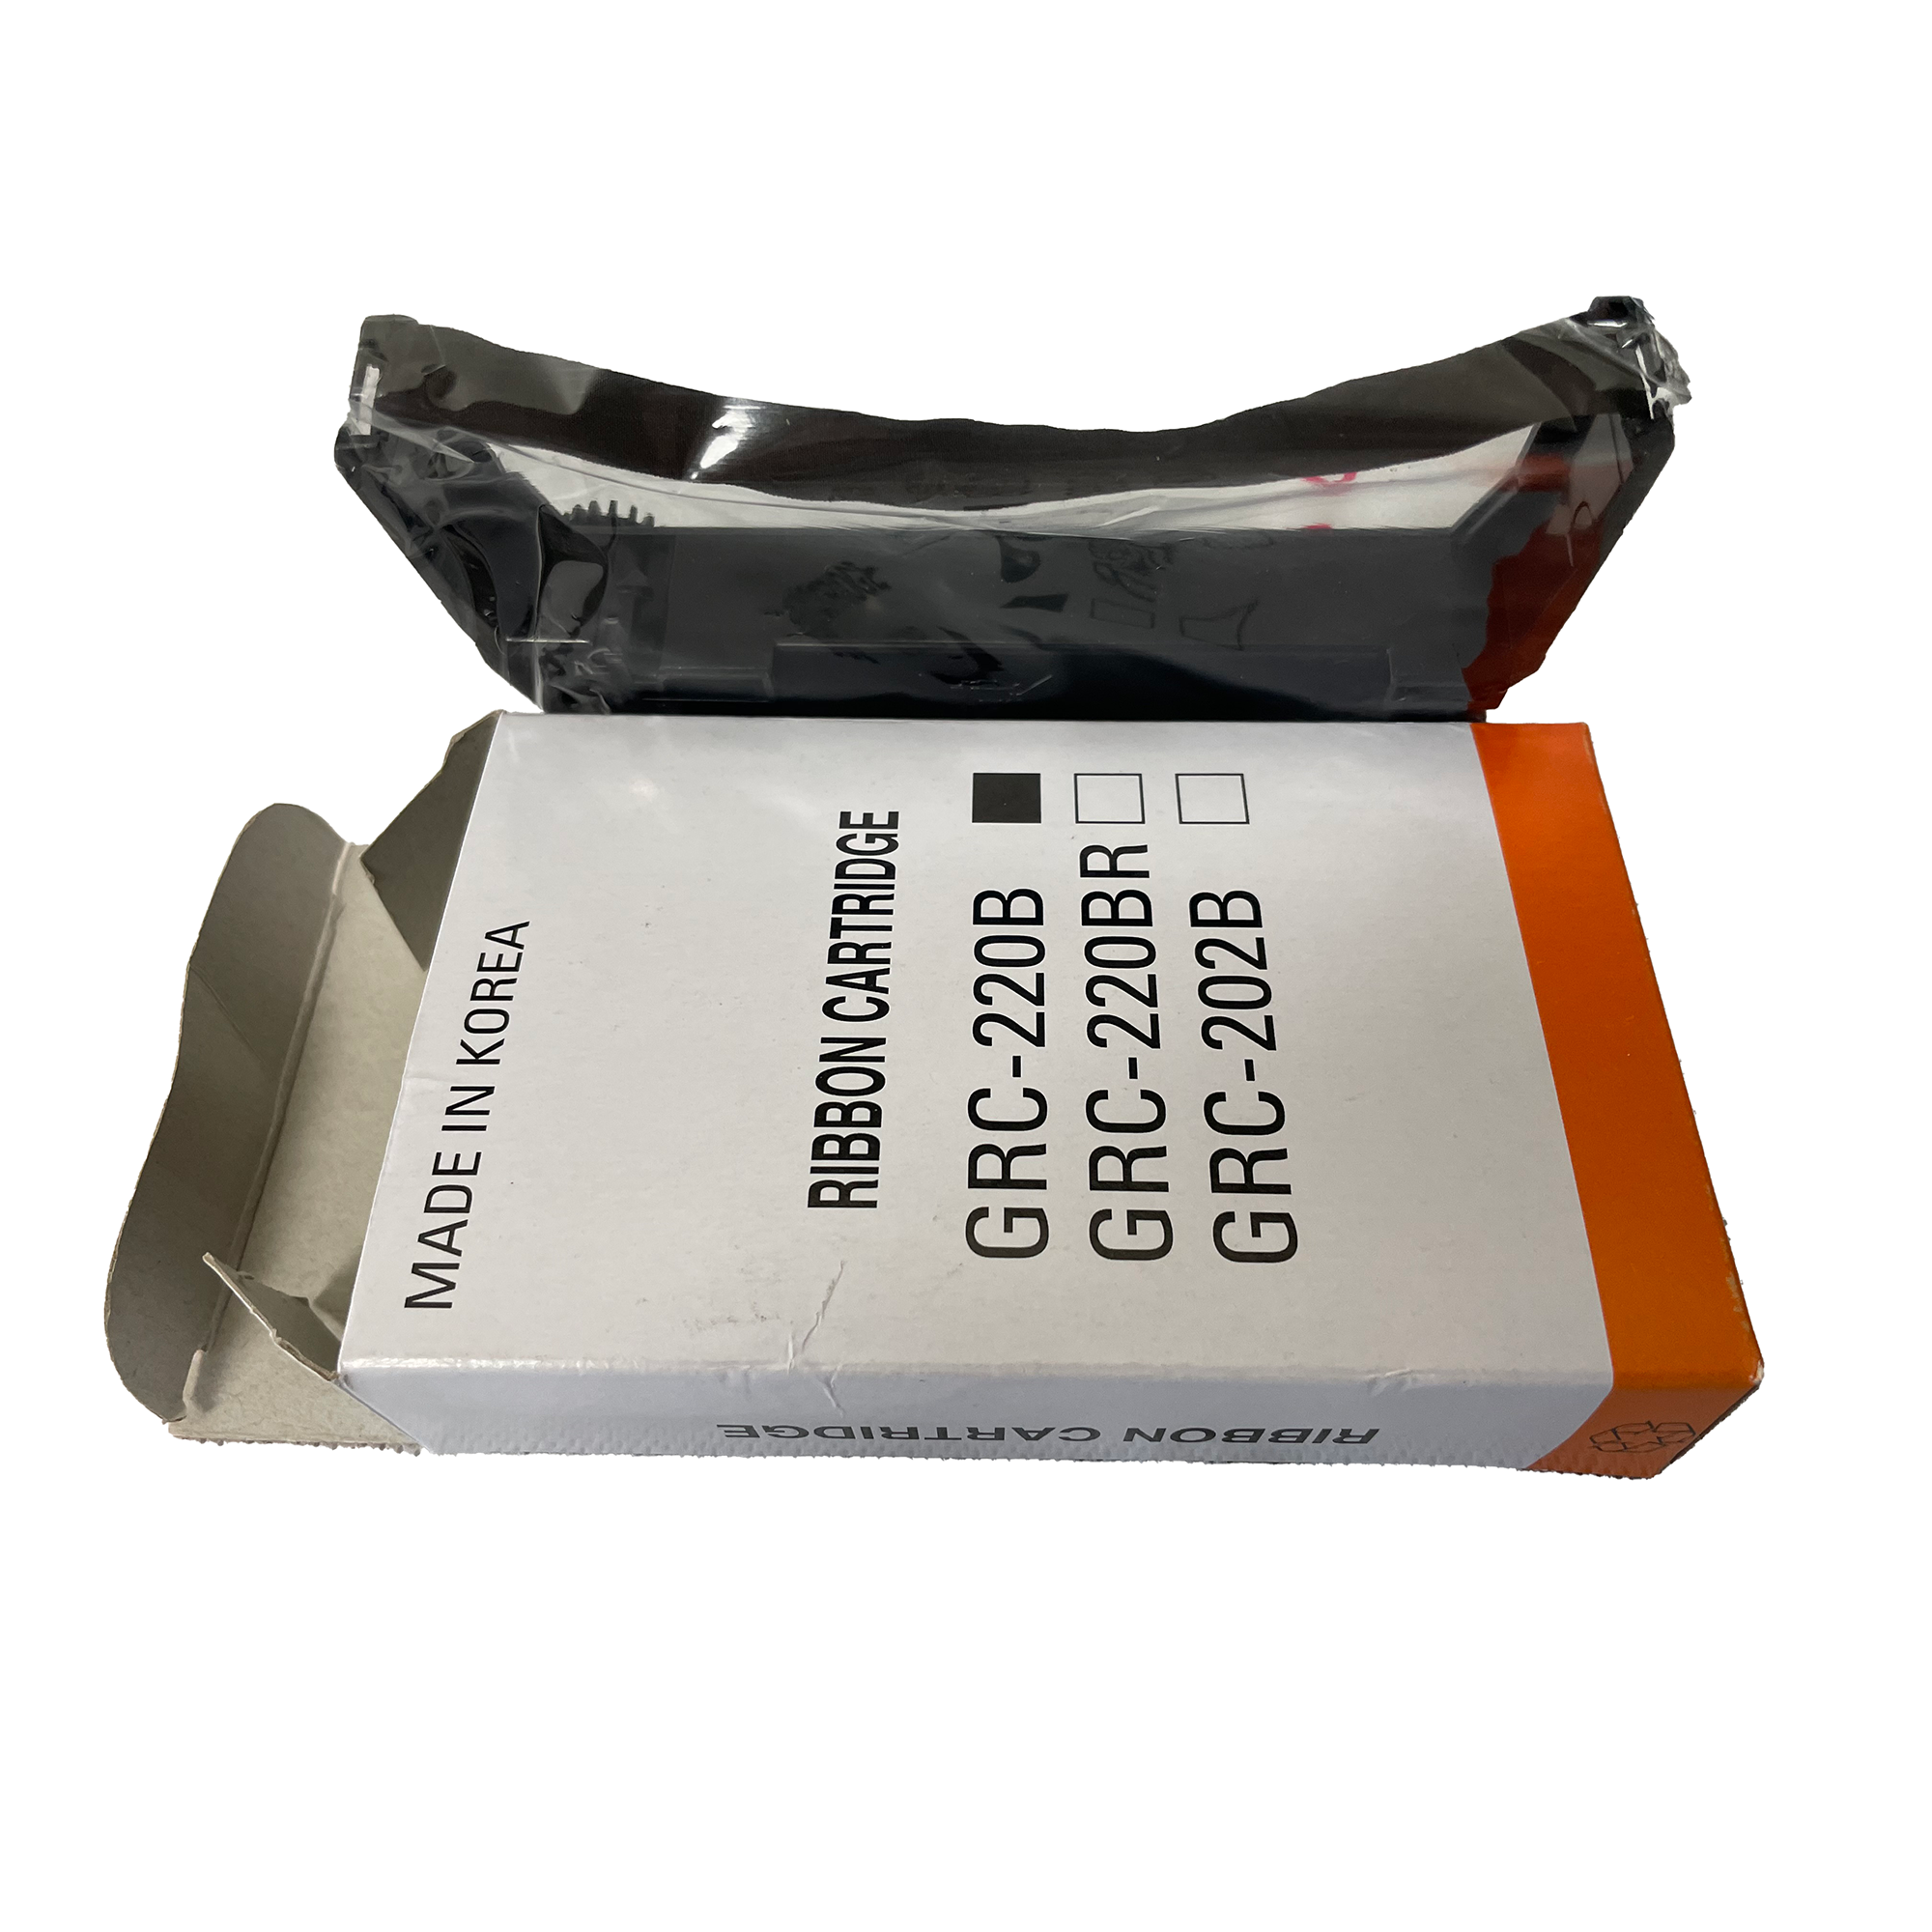 GRC-220B GRC-220BR Ribbon Cartridge for Kitchen Docket Receipt Printer - Bixolon SRP275 ERC30